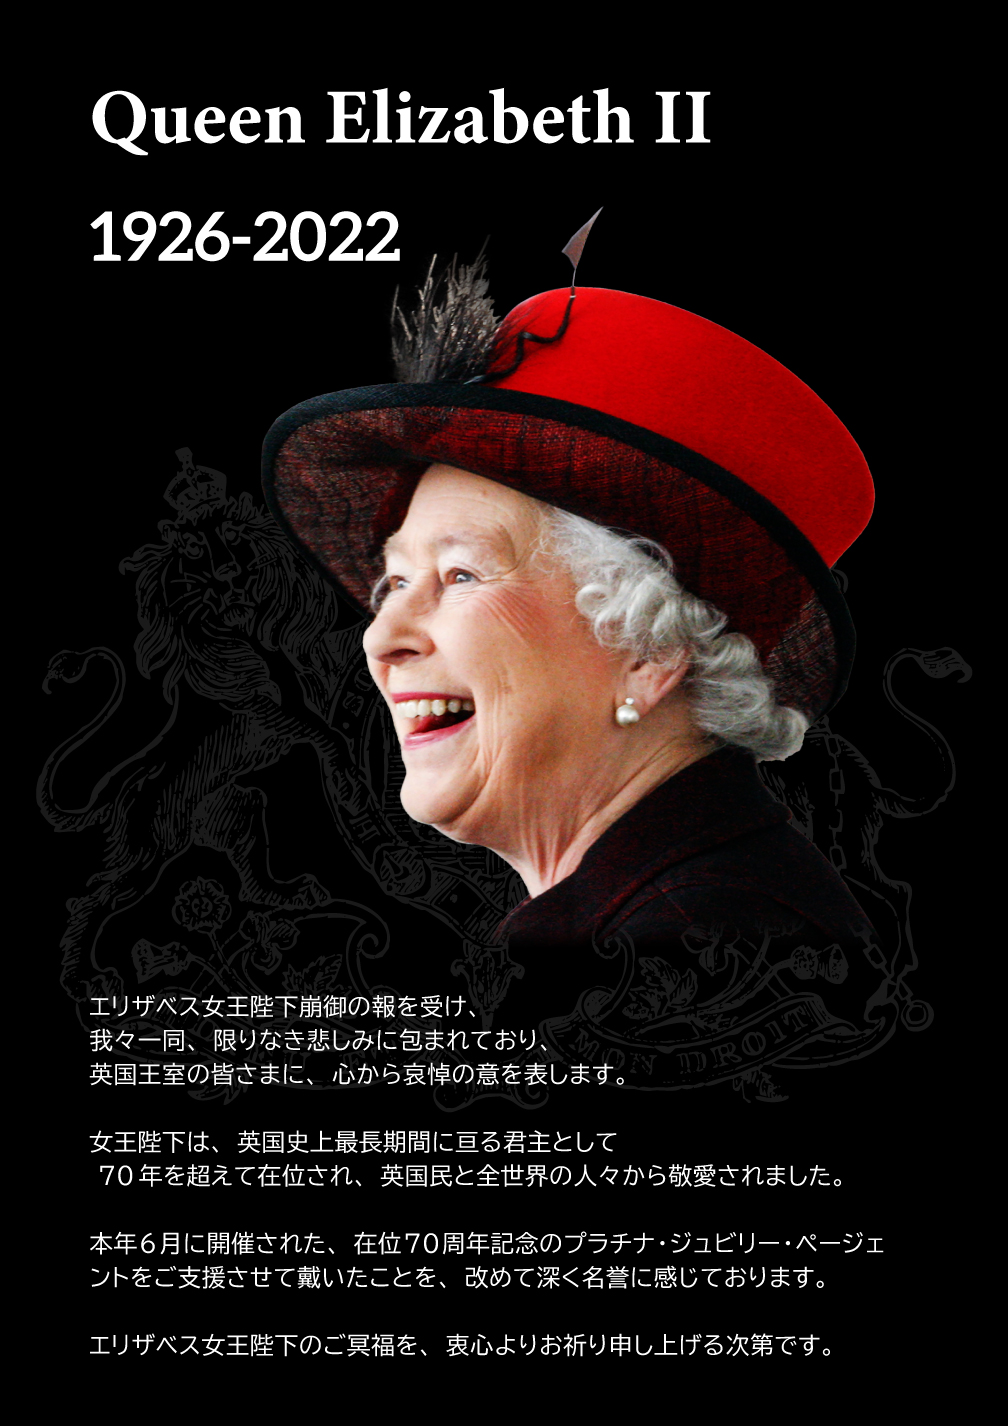 2002-2003 エリザベス女王在位50年 ゴールデンジュビリー記念 貴重